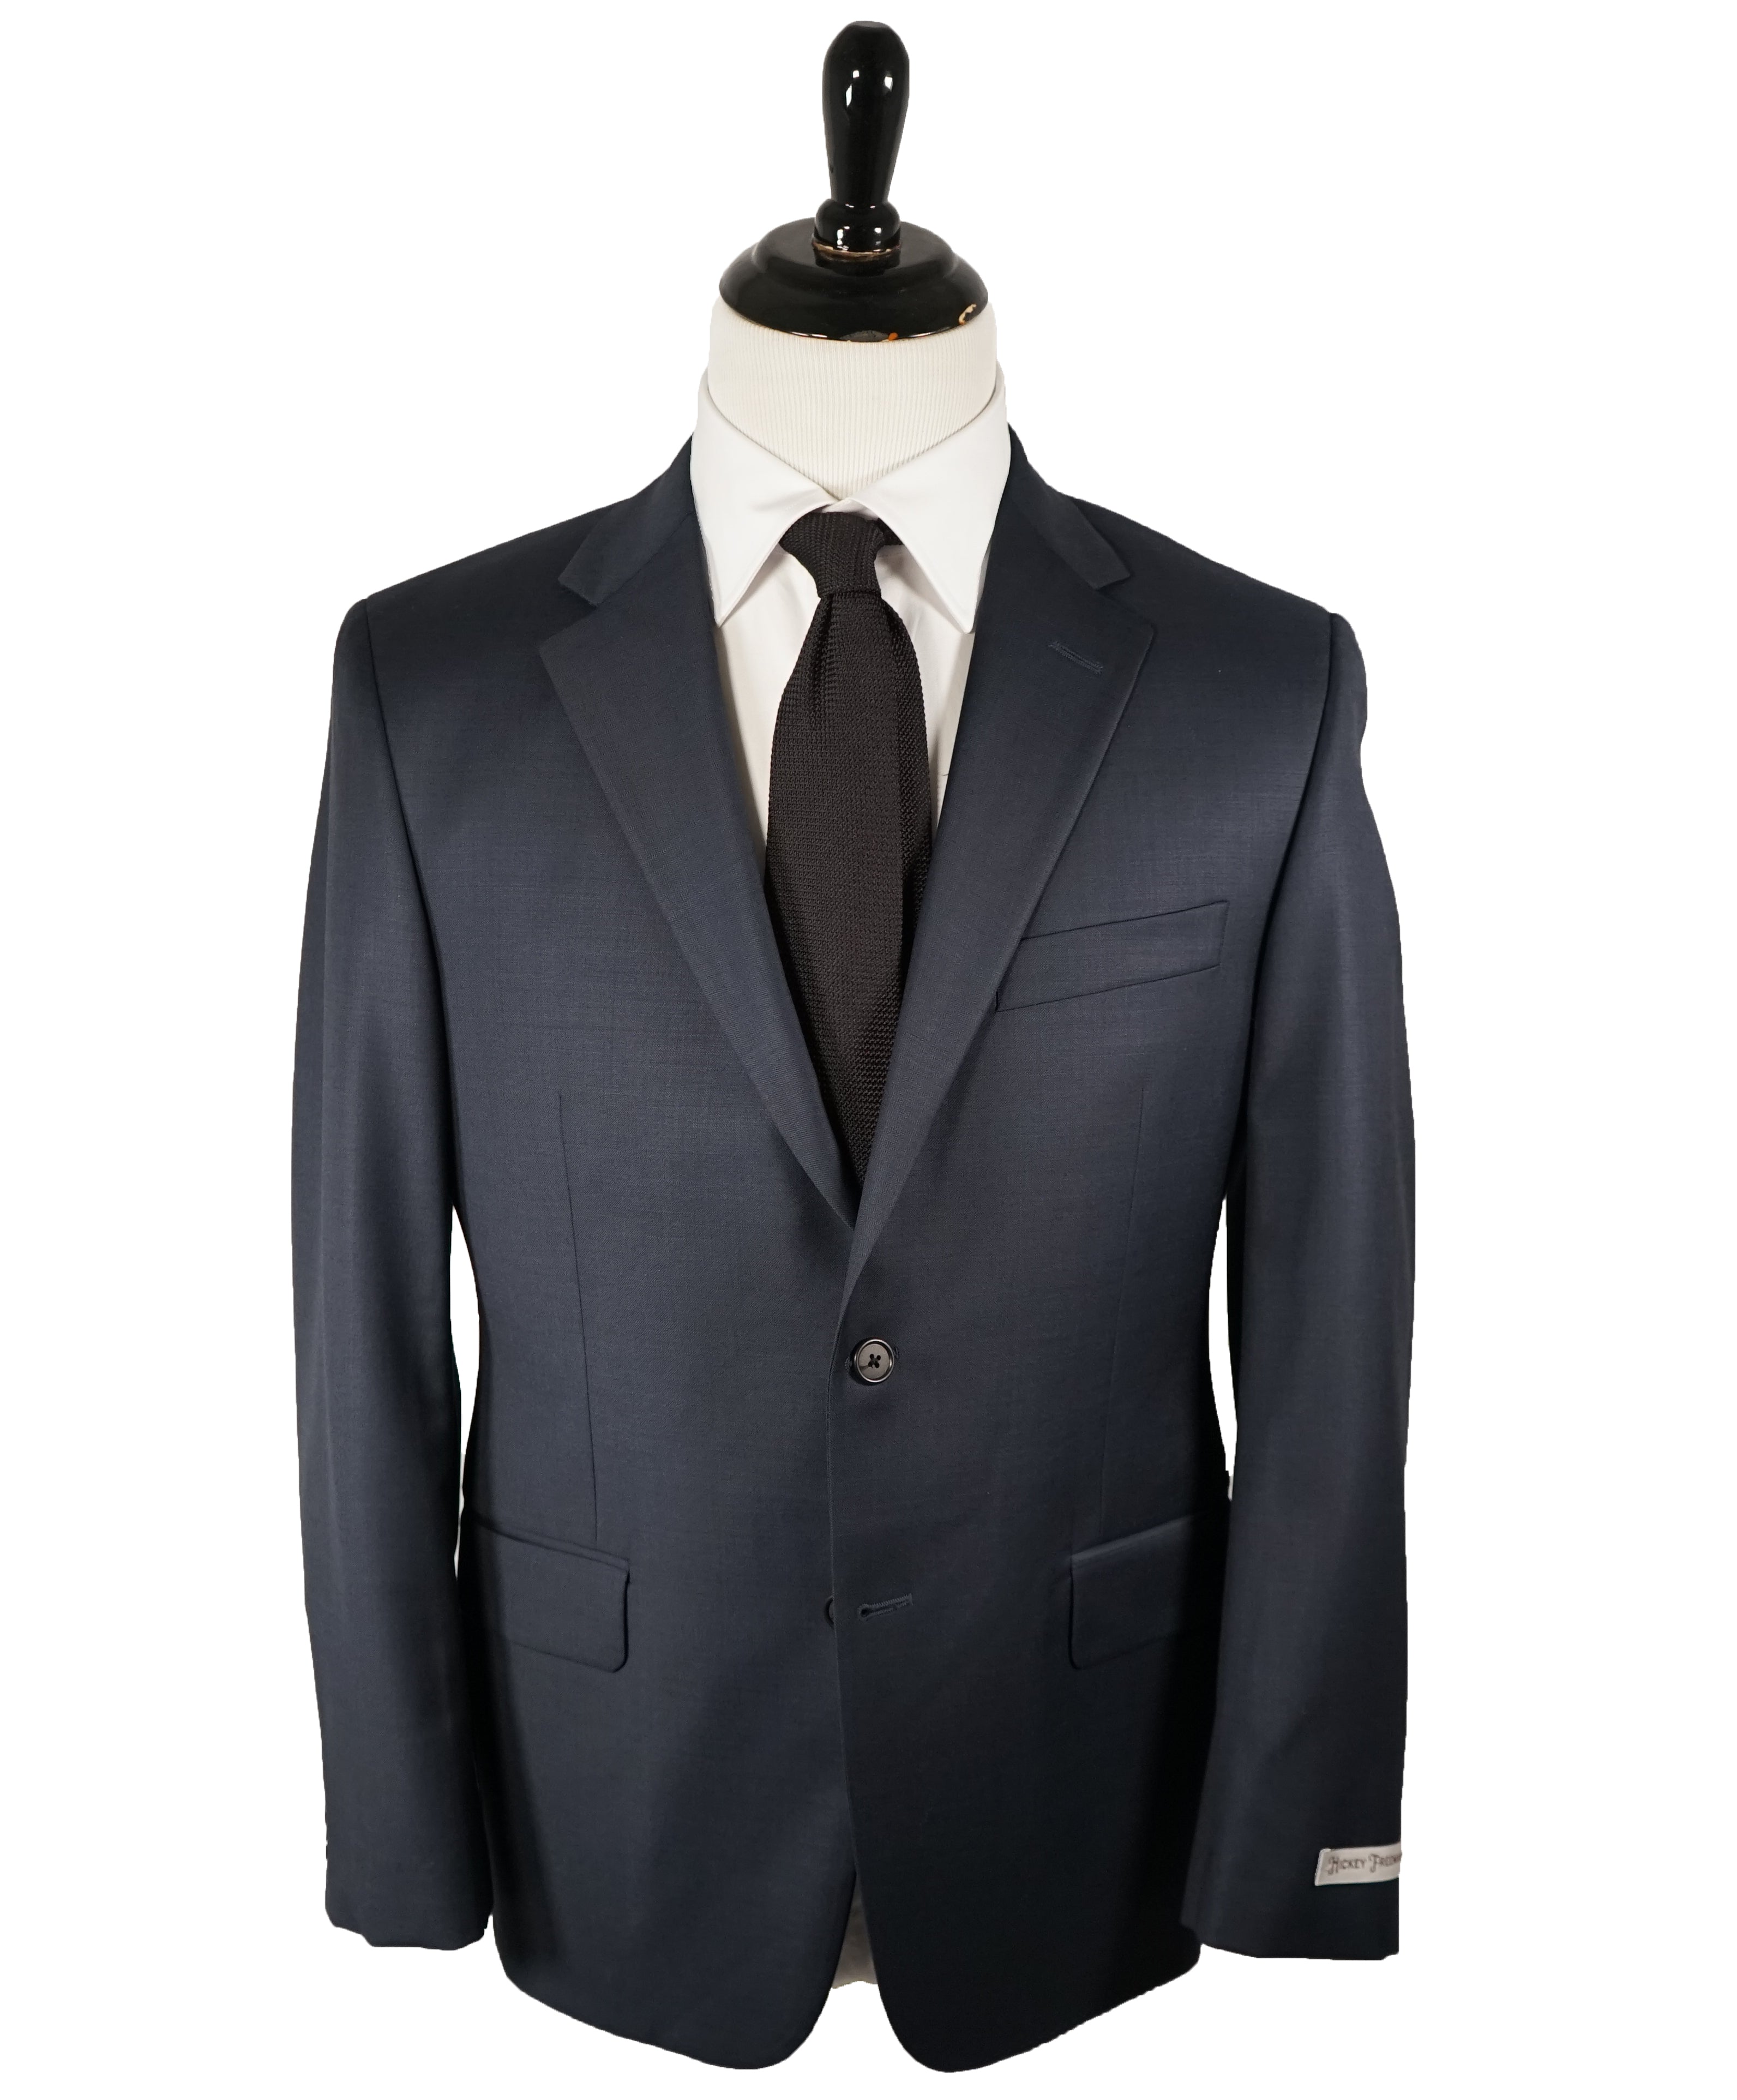 HICKEY FREEMAN - Navy Blue Textured Solid Suit - 40S – Luxe Hanger